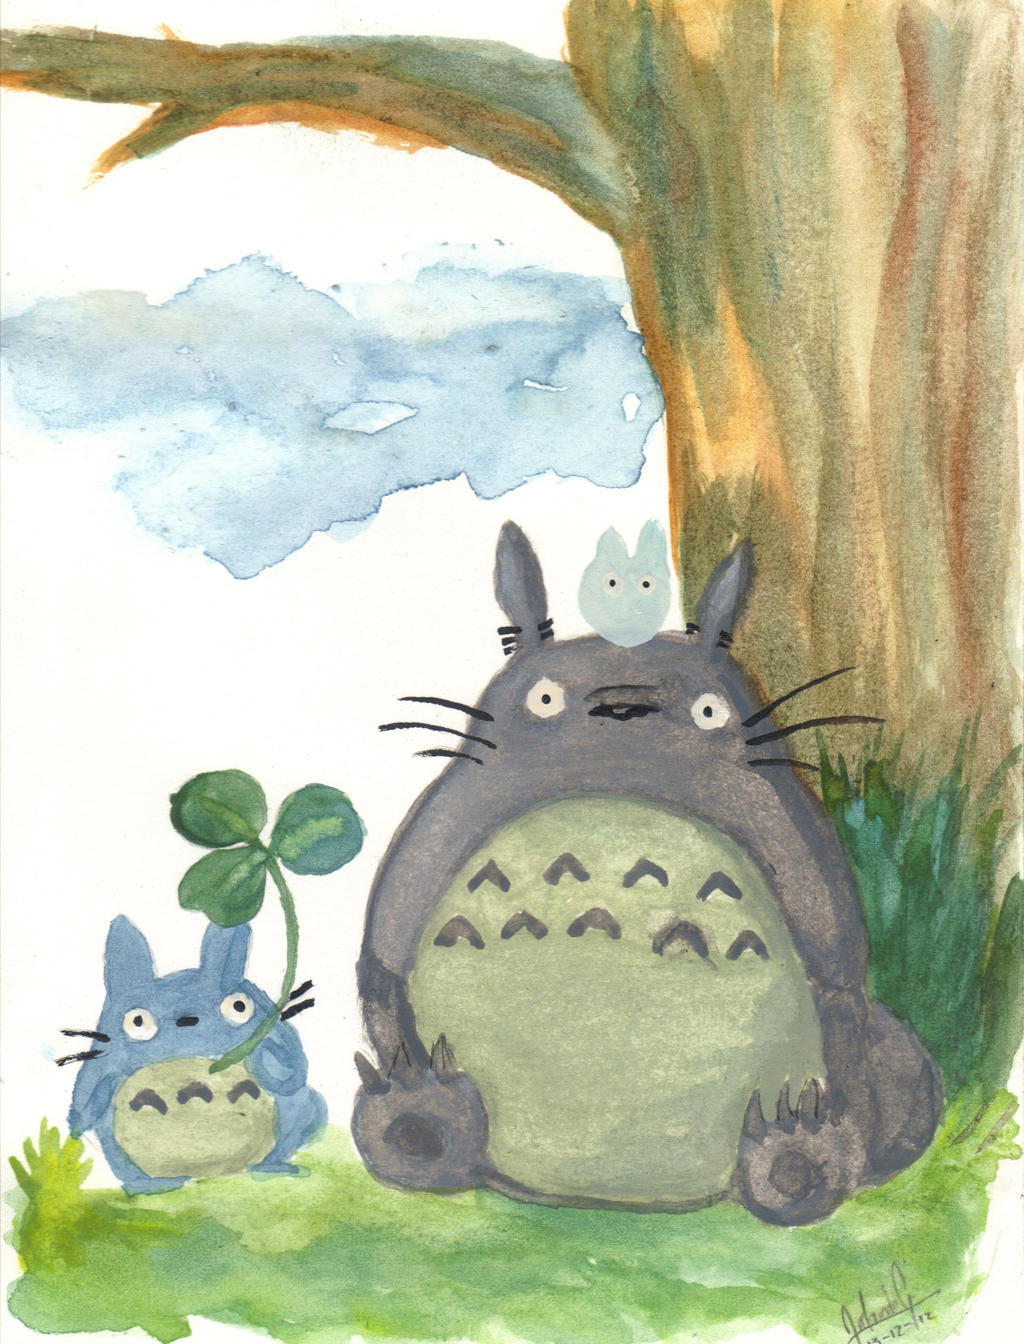 Nếu bạn yêu thích phim hoạt hình, hãy xem qua bộ ảnh O-Totoro đầy màu sắc và vui nhộn. Với những hình ảnh đáng yêu và luôn mang lại nhiều tiếng cười, O-Totoro sẽ trở thành một người bạn đồng hành đáng yêu trên chiếc điện thoại của bạn.